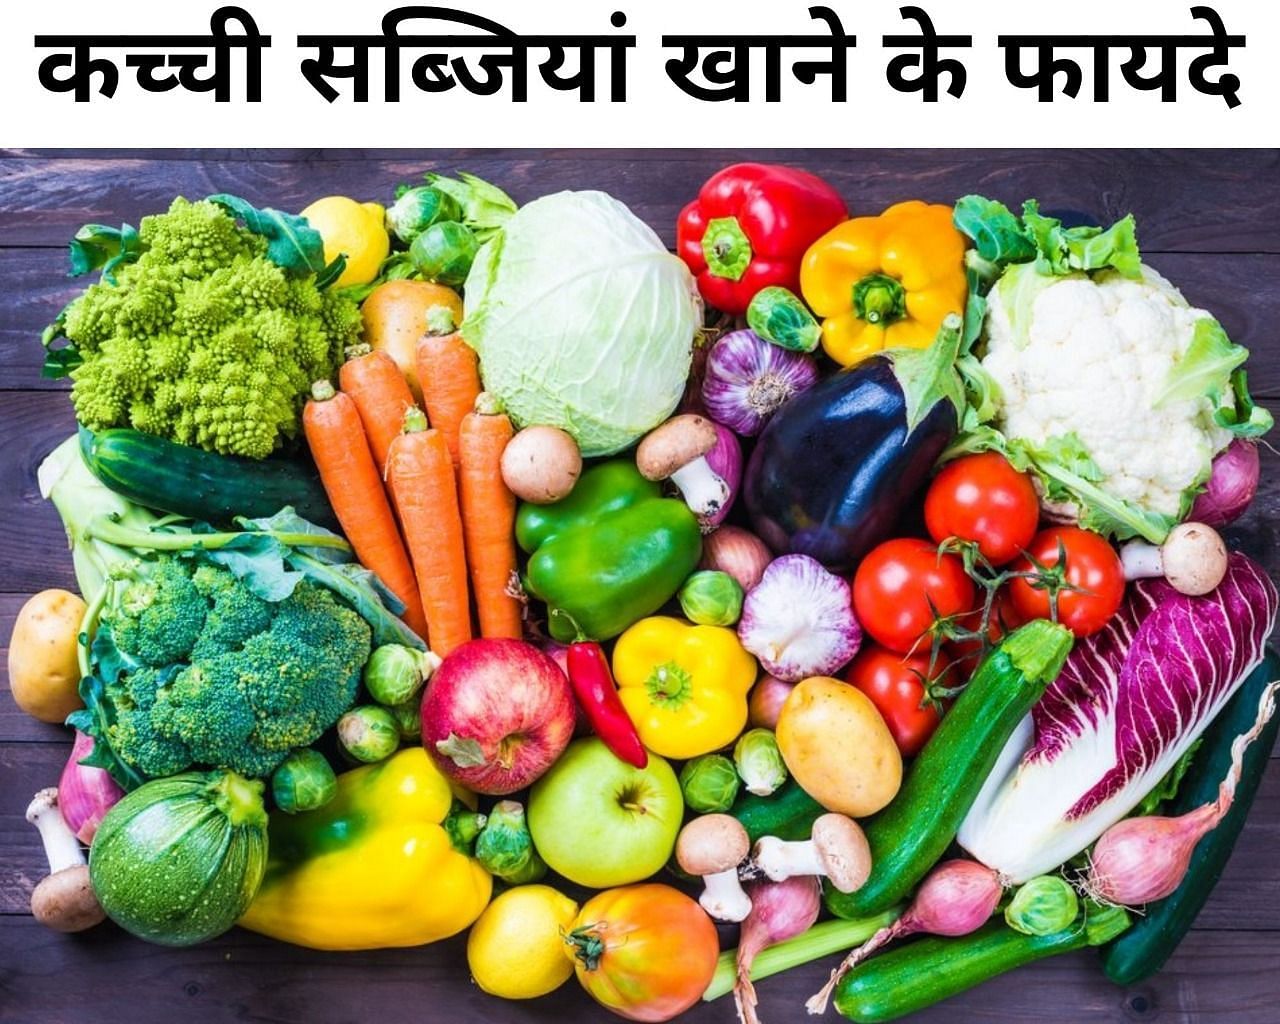 कच्ची सब्जियां खाने के 5 फायदे (फोटो - sportskeedaहिन्दी)